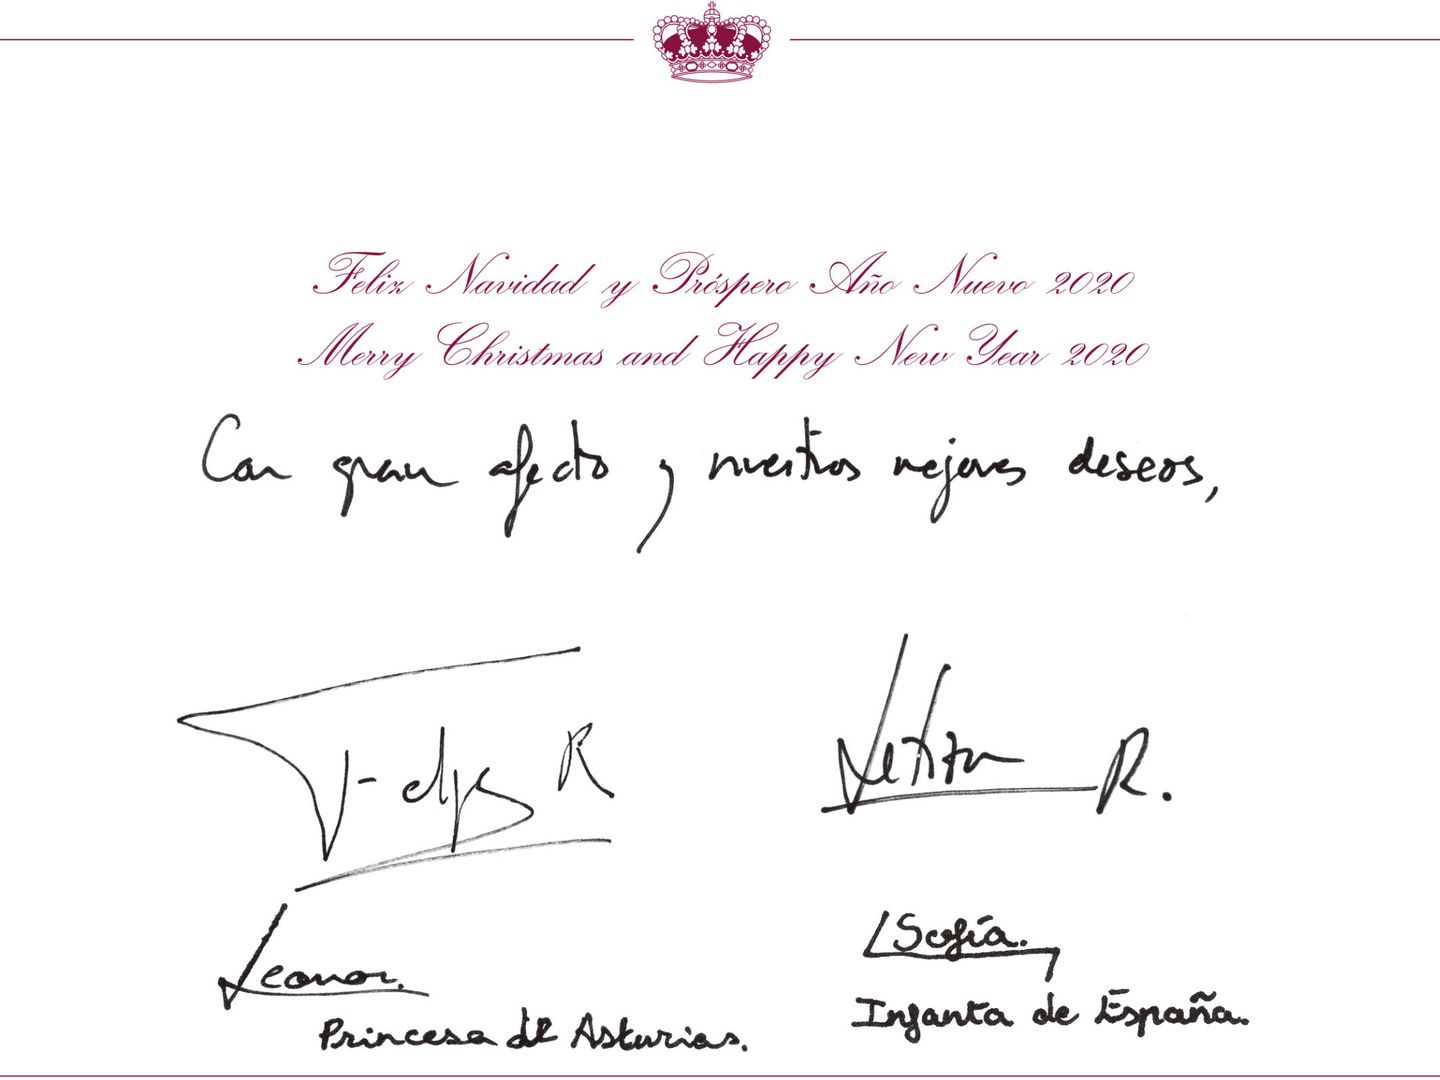 Felicitación navideña de los Reyes y sus hijas. (Casa Real)